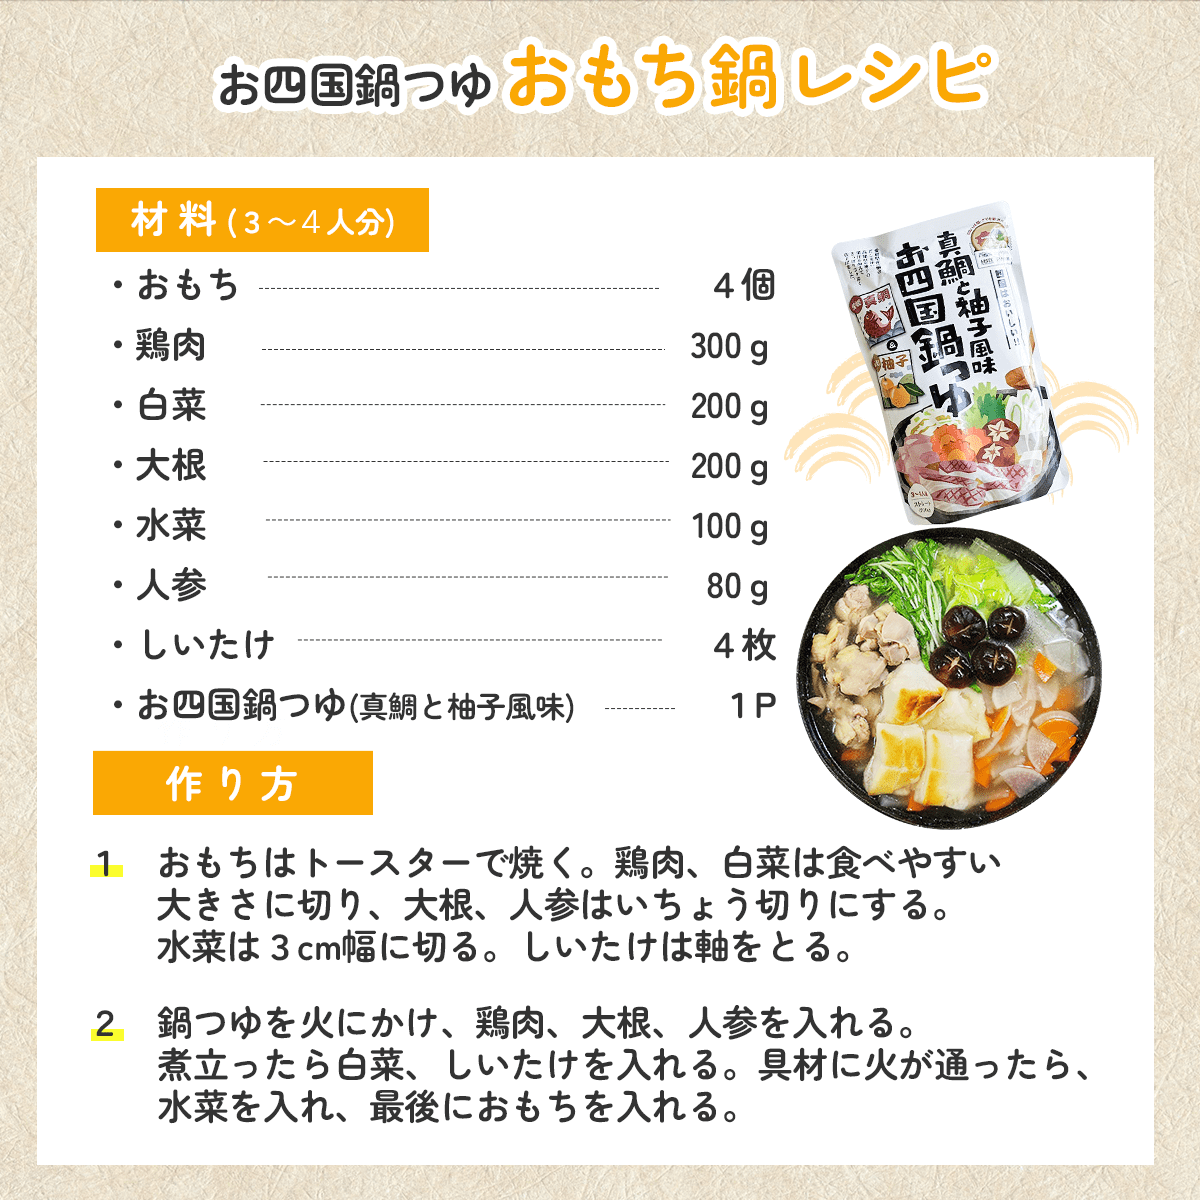 お四国鍋つゆ「おもち鍋」レシピ